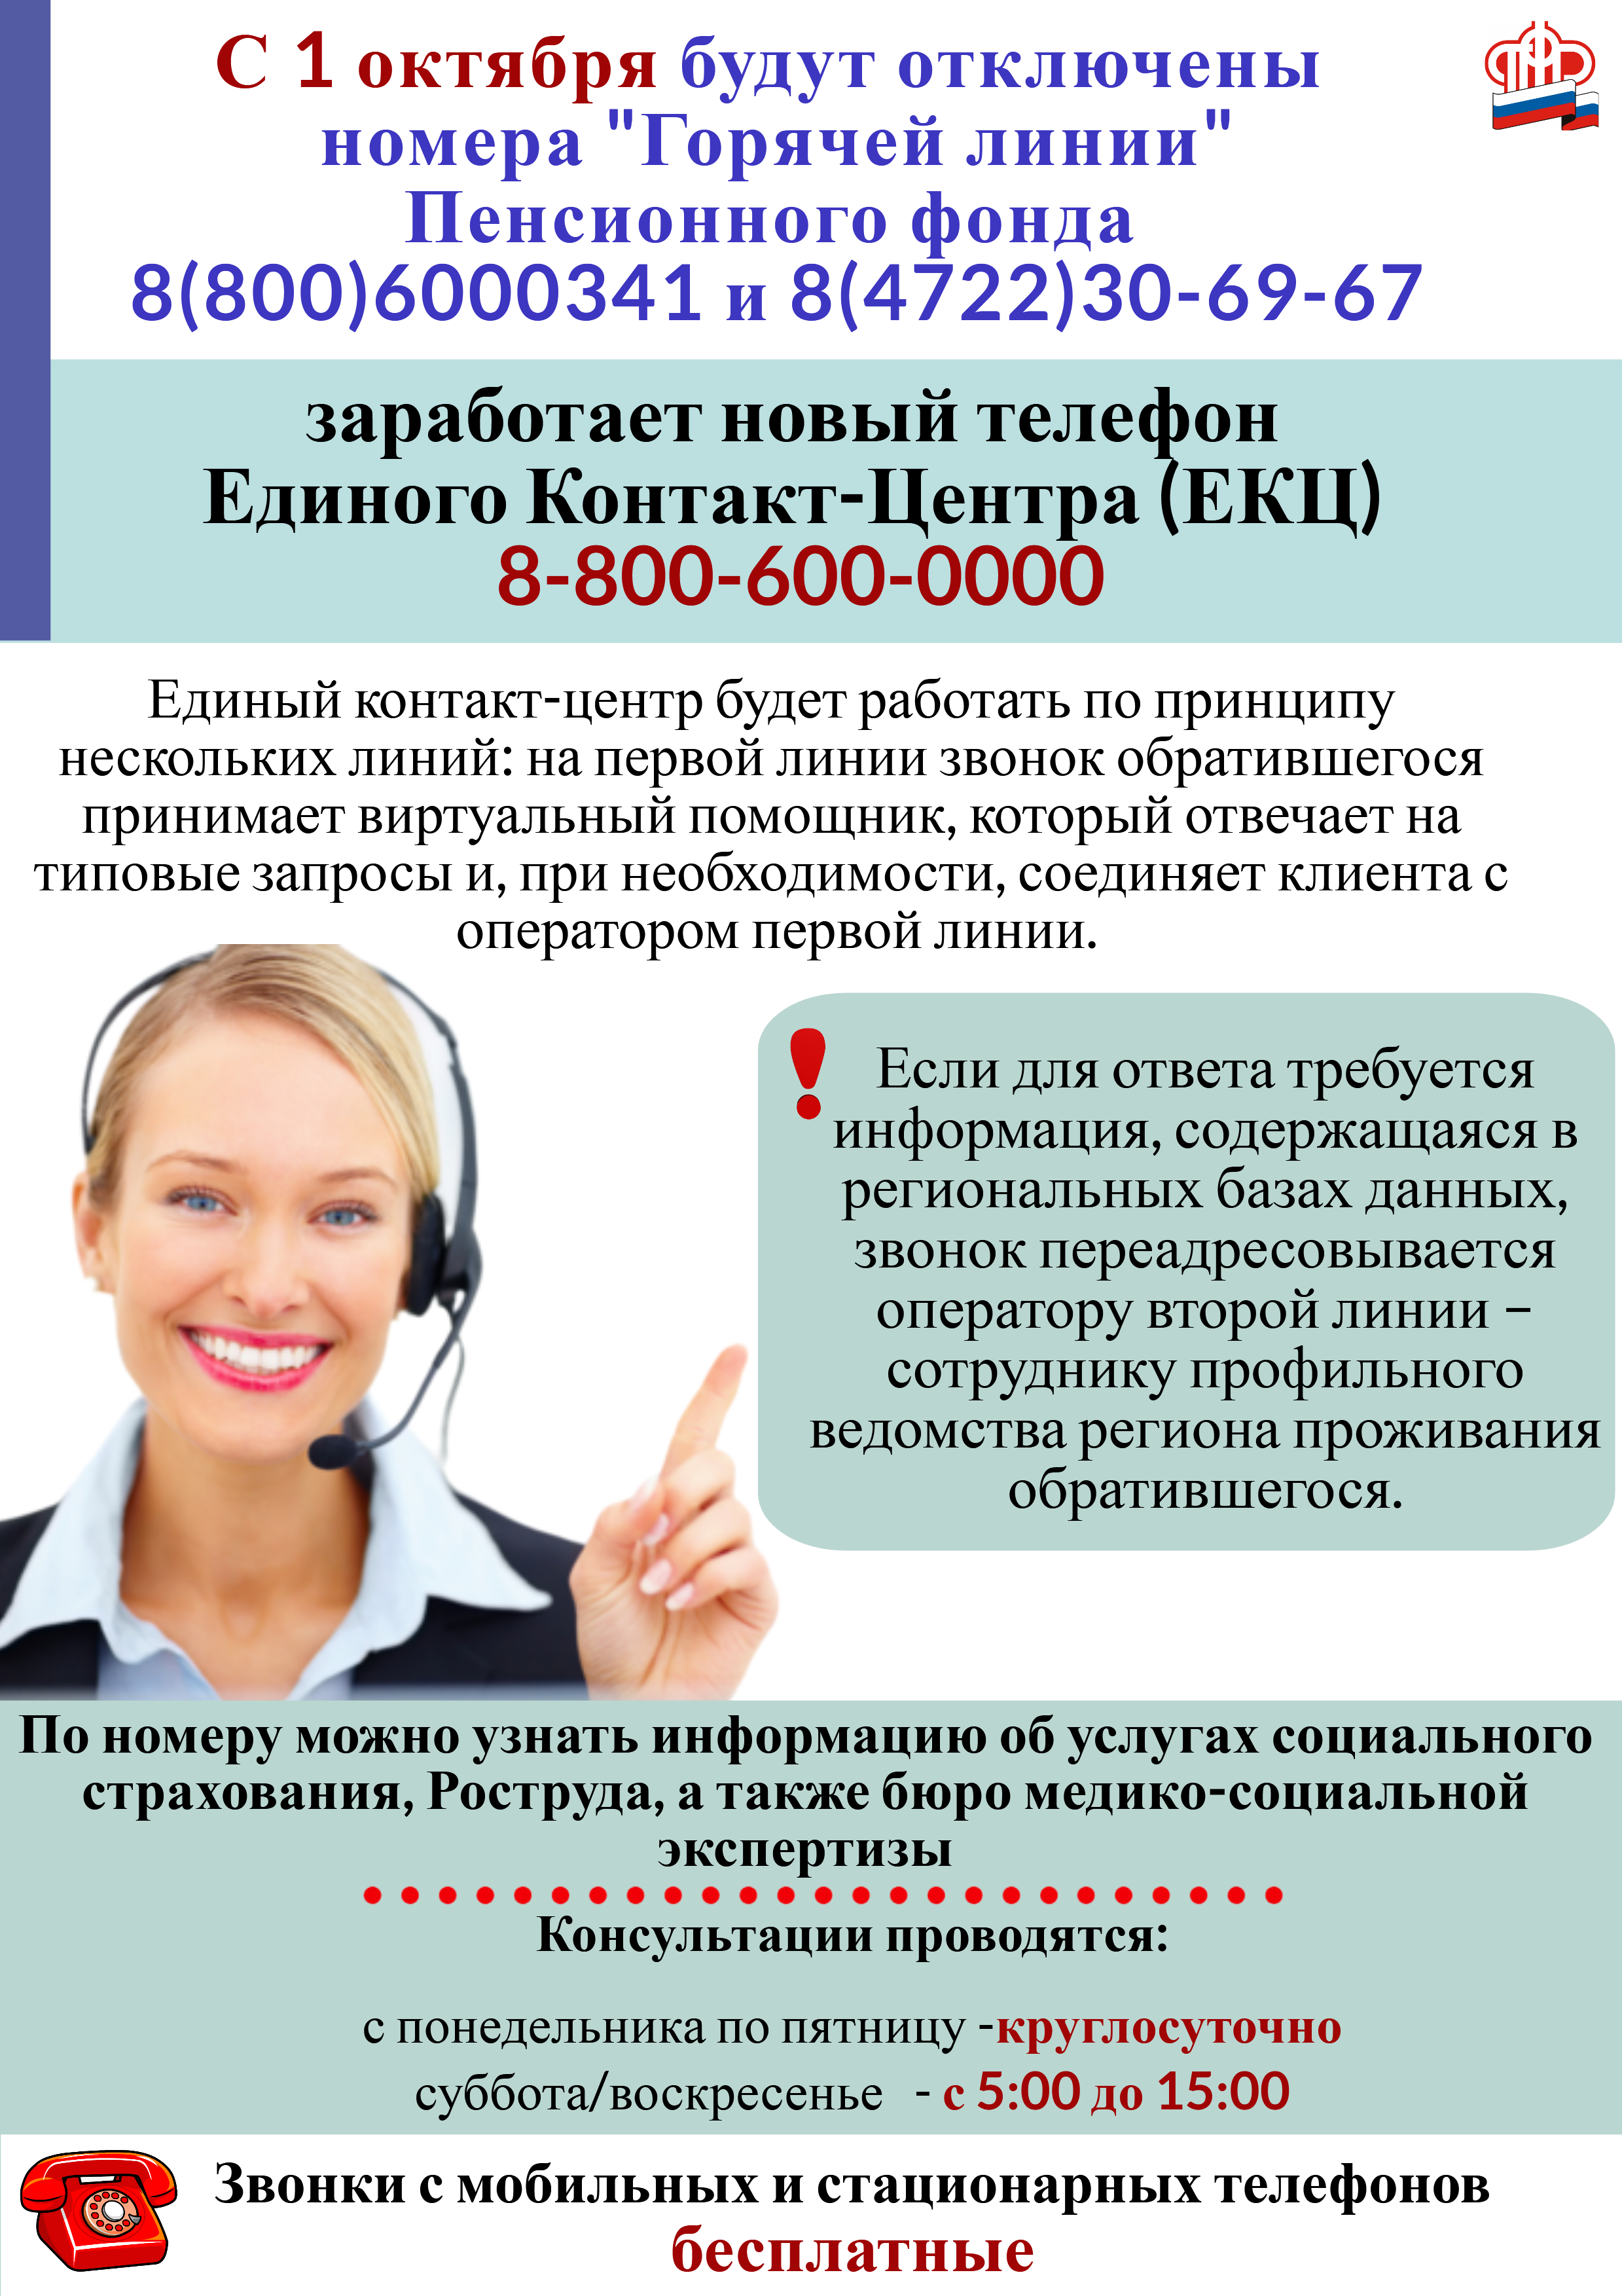 с 1 октября заработает новый телефон Единого Контакт-Центра 8-800-600-0000.